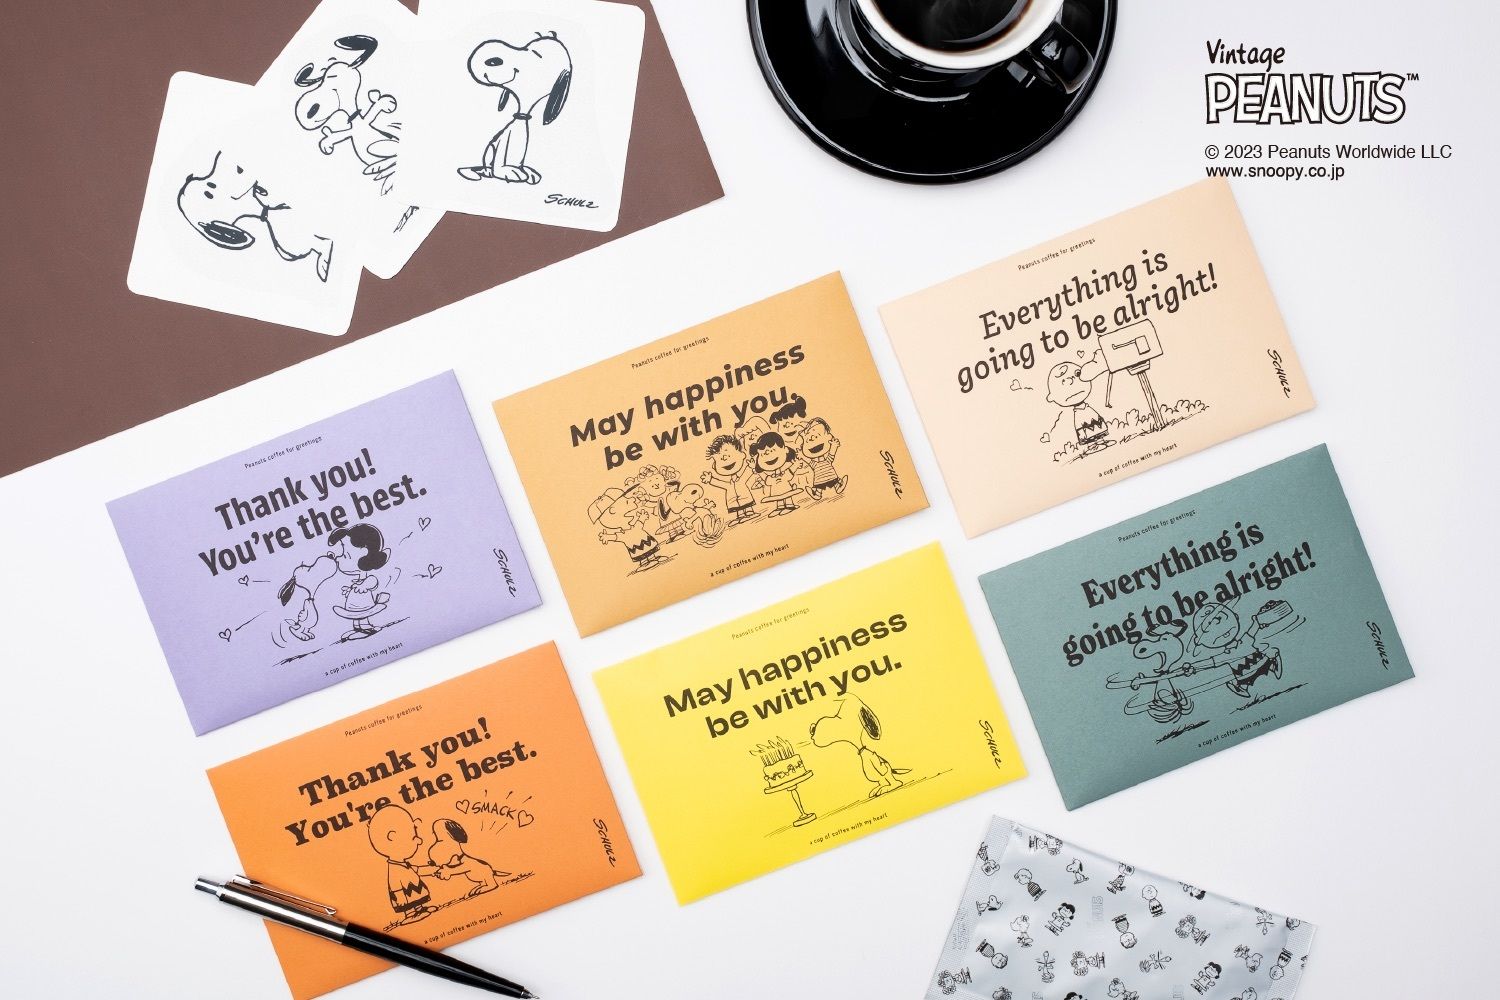 【SNOOPY coffee】気持ちを伝える封筒型コーヒーギフト新発売。3種類のメッセージを描いたカラフルなデザインと本格コーヒーが、感謝やお祝いの気持ちをさらに温かく伝えます。 #Z世代Pick